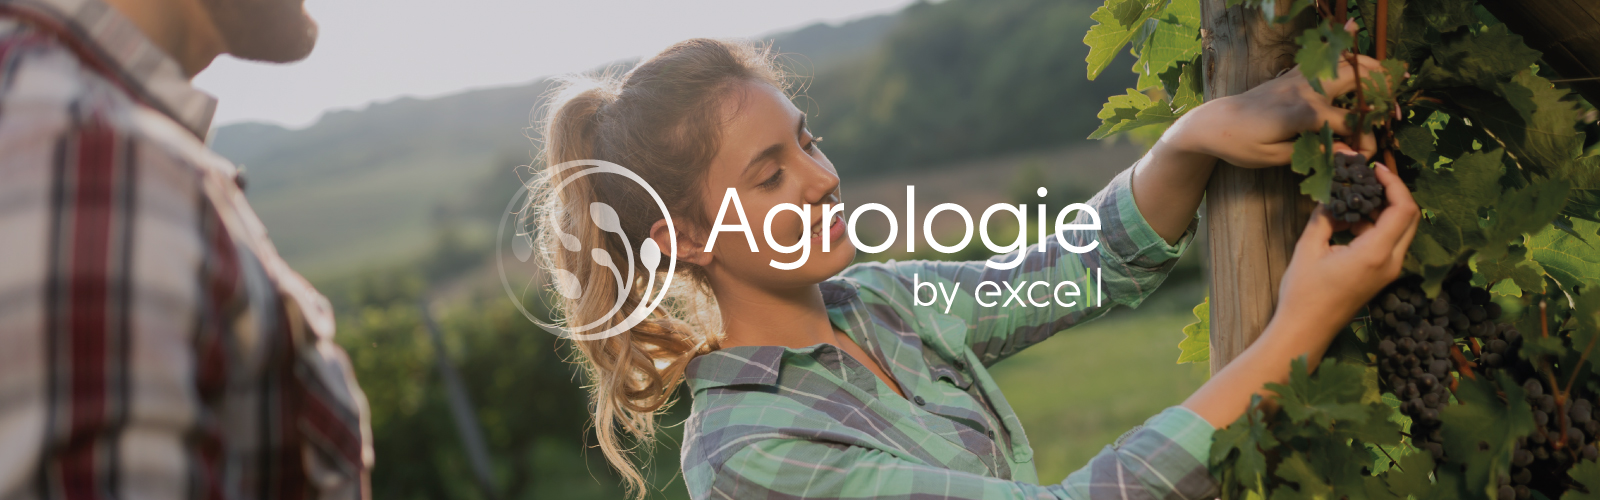 Agrologie